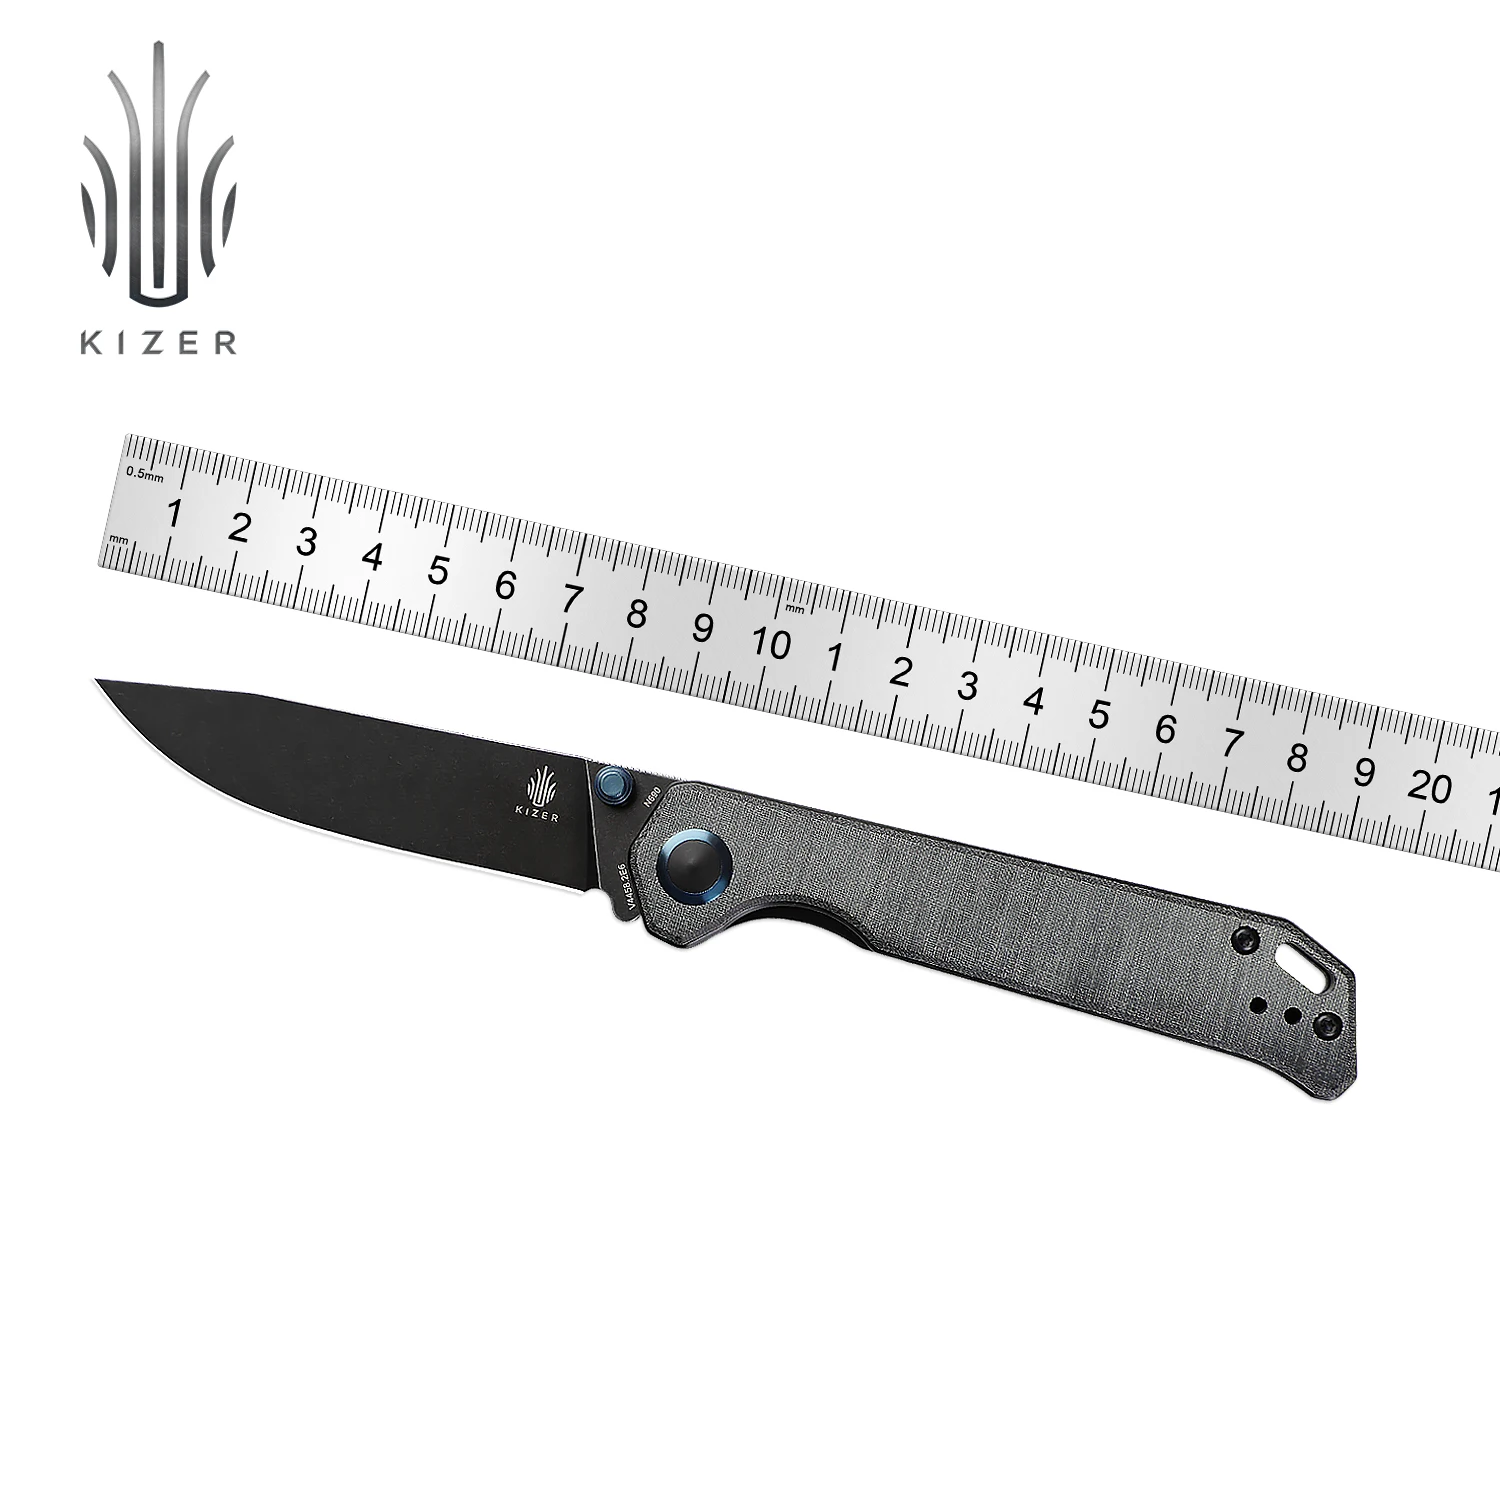 Эксклюзивный нож для выживания Kizer Mojave Begleiter2 V4458.2E6 с черной ручкой из Микарты и стальным лезвием N690, Нож для переноски синего цвета